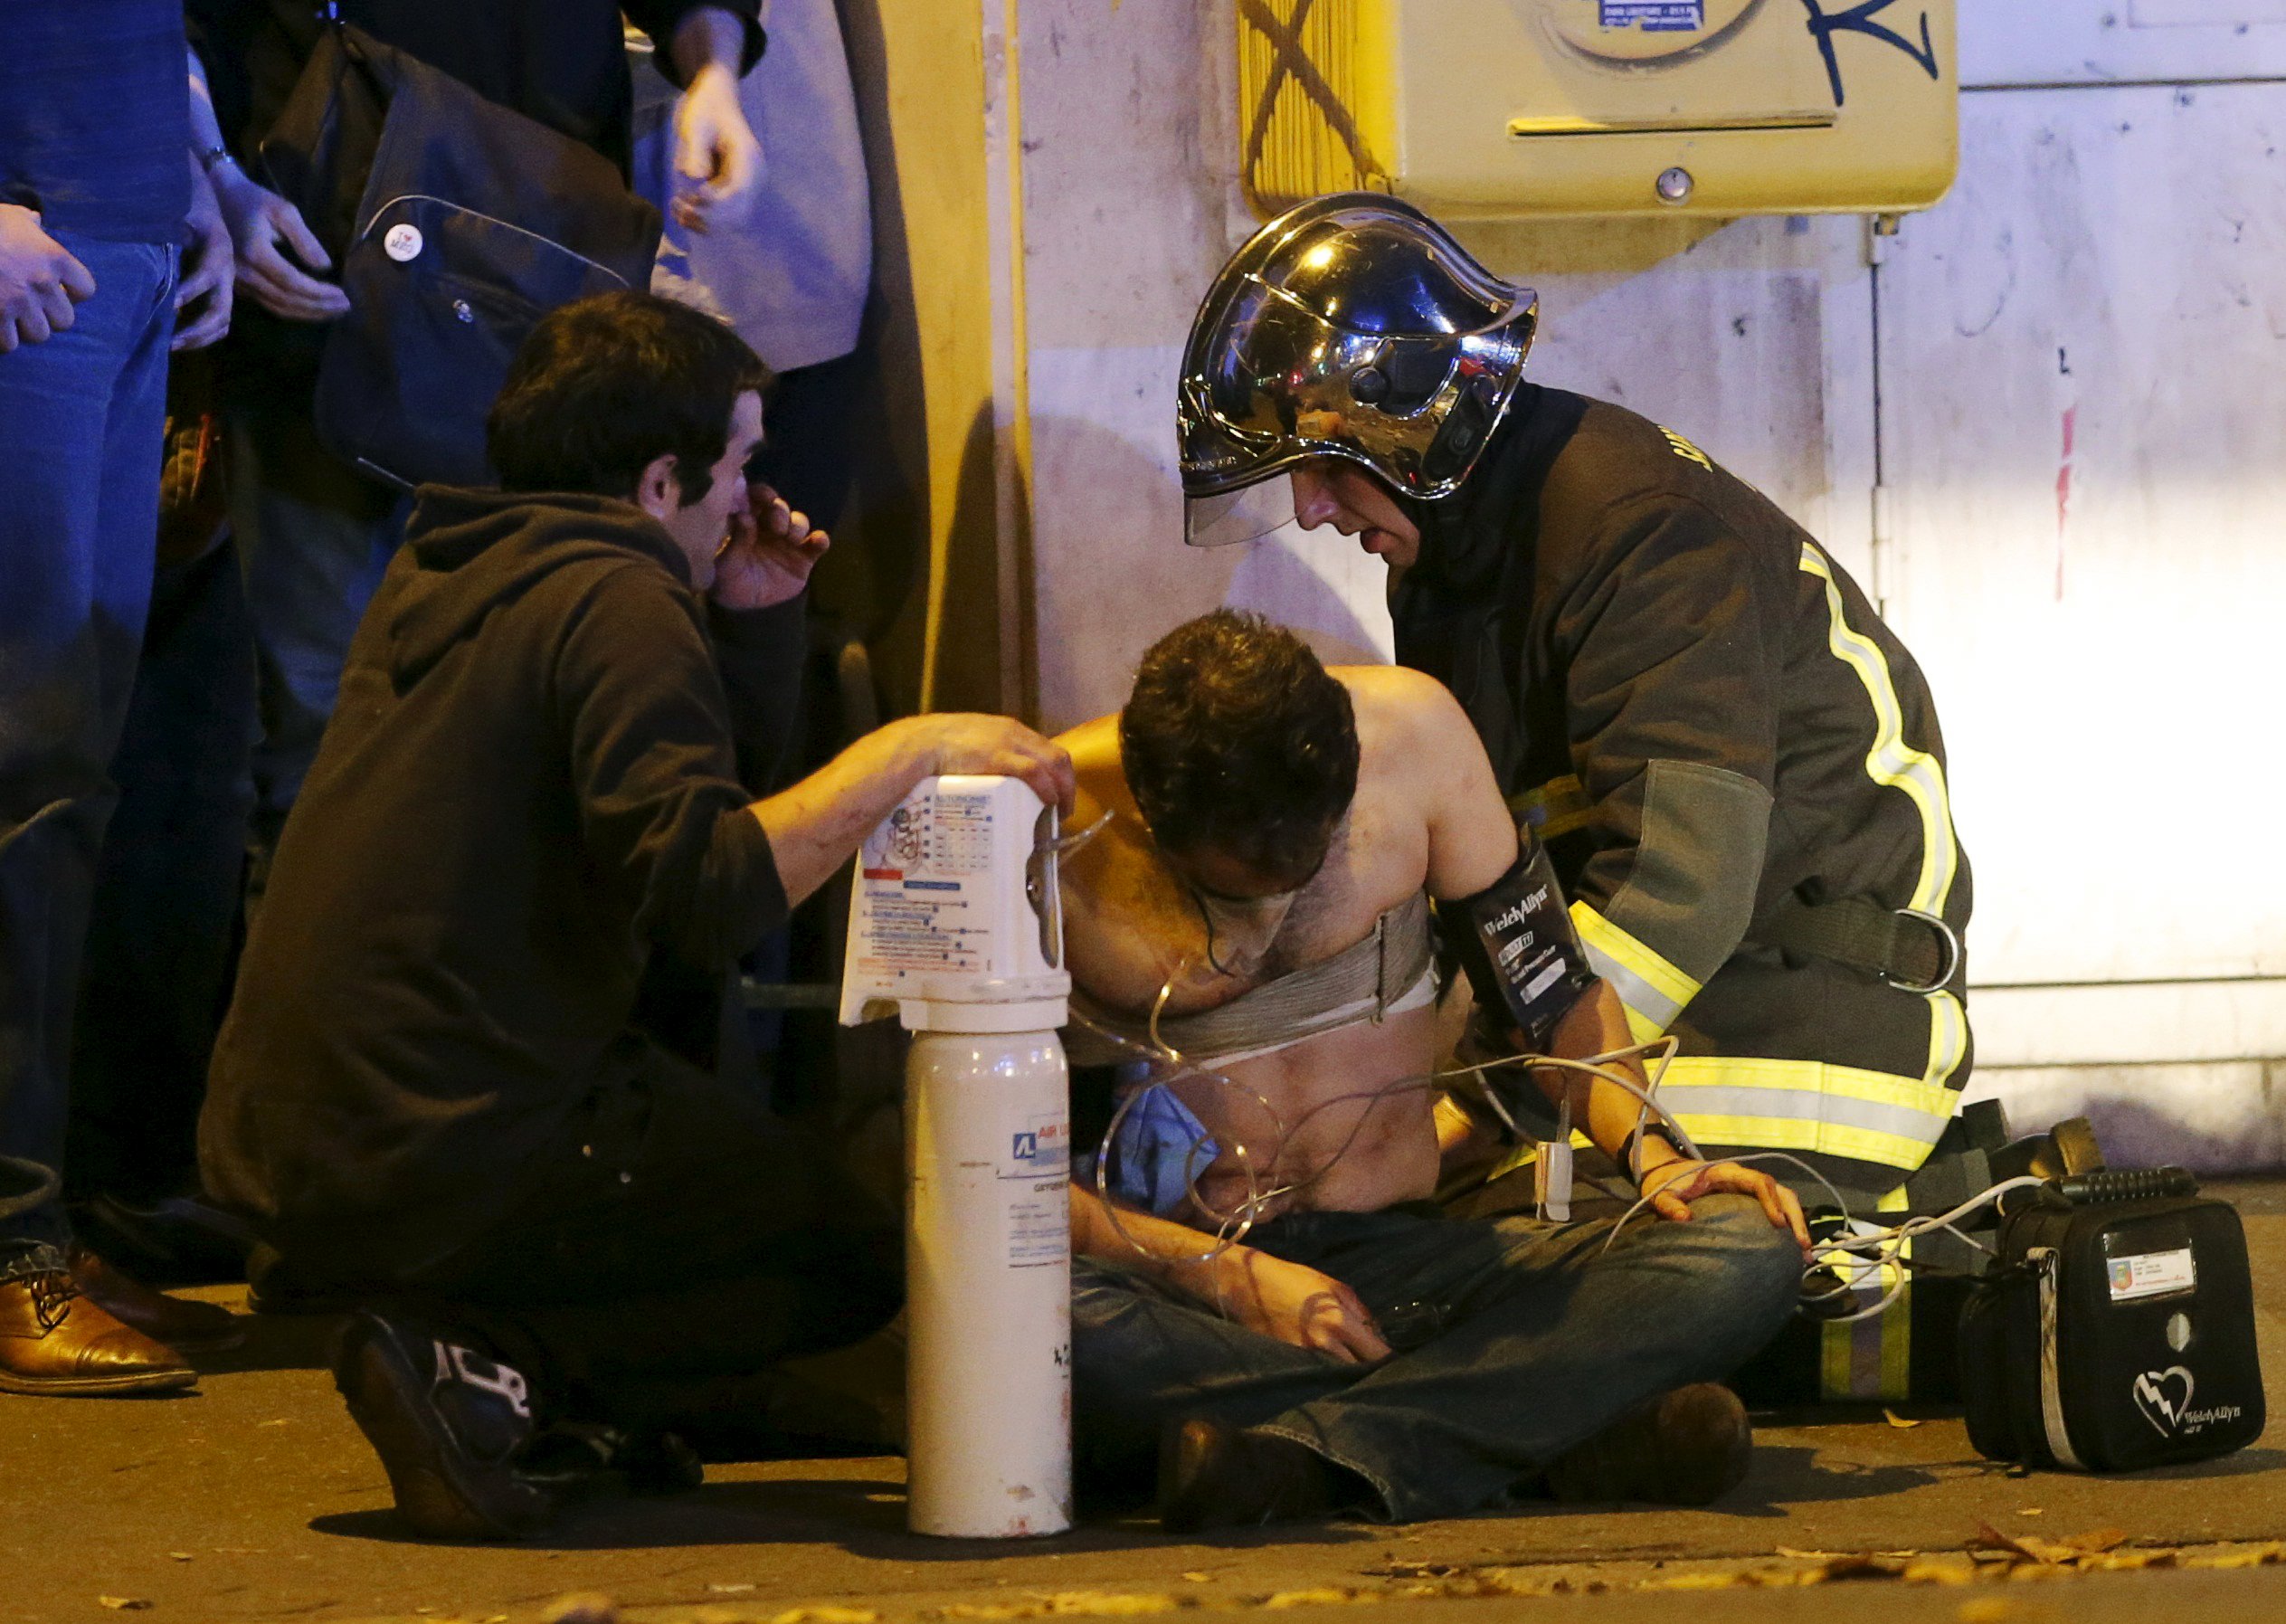 París vive su noche “más oscura” desde el atentado nazi y en VTV transmiten la campaña chavista